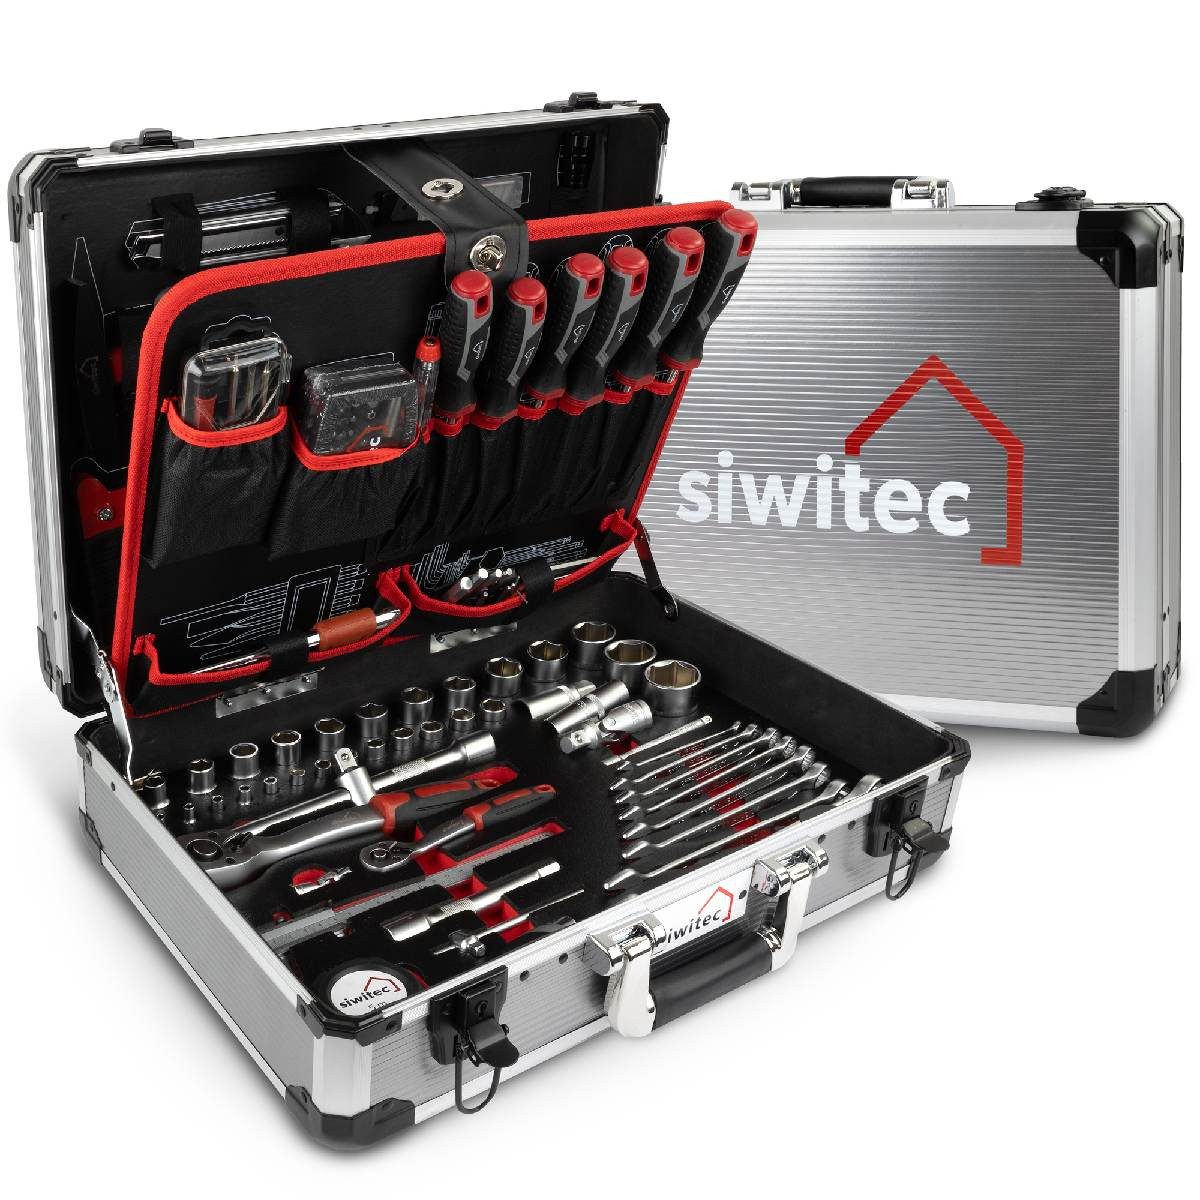 siwitec Werkzeugkoffer 139-teilig, Werkzeug Set CRV, Werkzeugkasten, Profi Werkzeugkoffer (139 St., enthält 139 Werkzeuge), vielseitig, ergonomisches Design, kompakt, leicht, handlich, 139 Teile